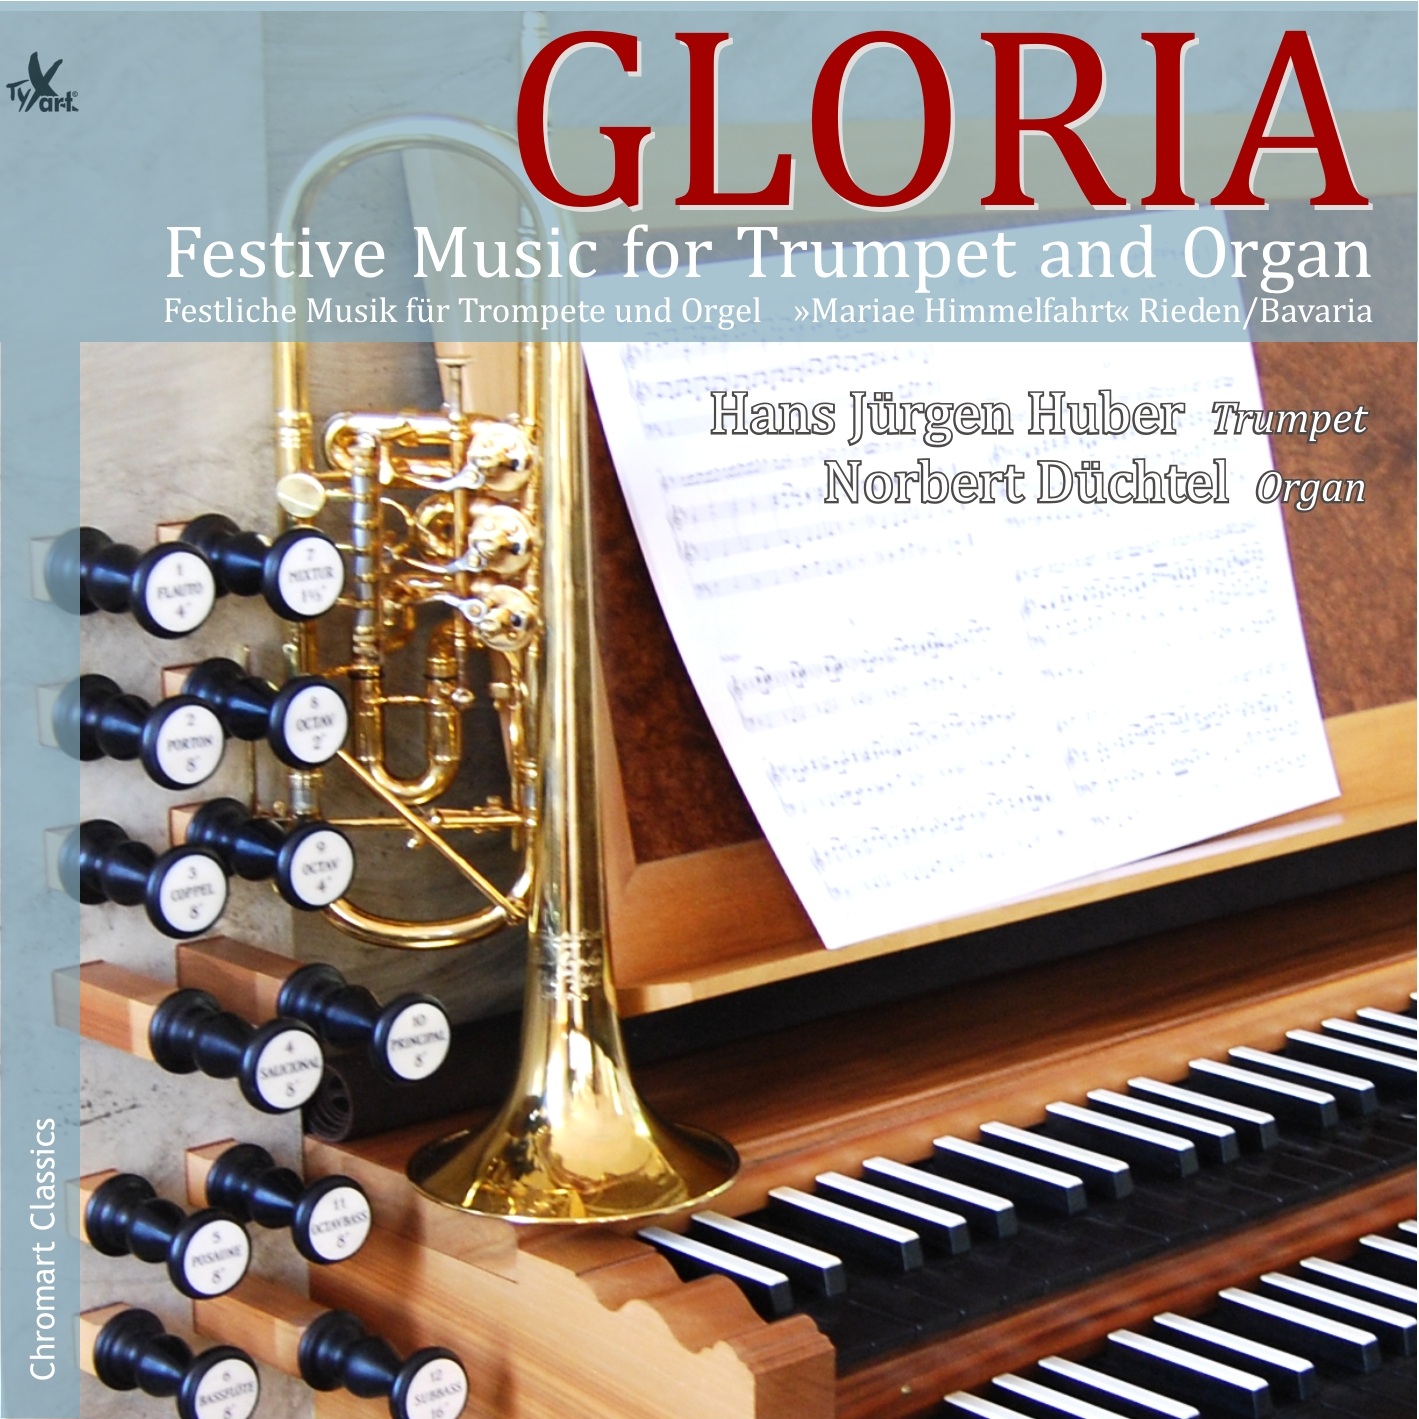 GLORIA - Festliche Musik für Trompete und Orgel